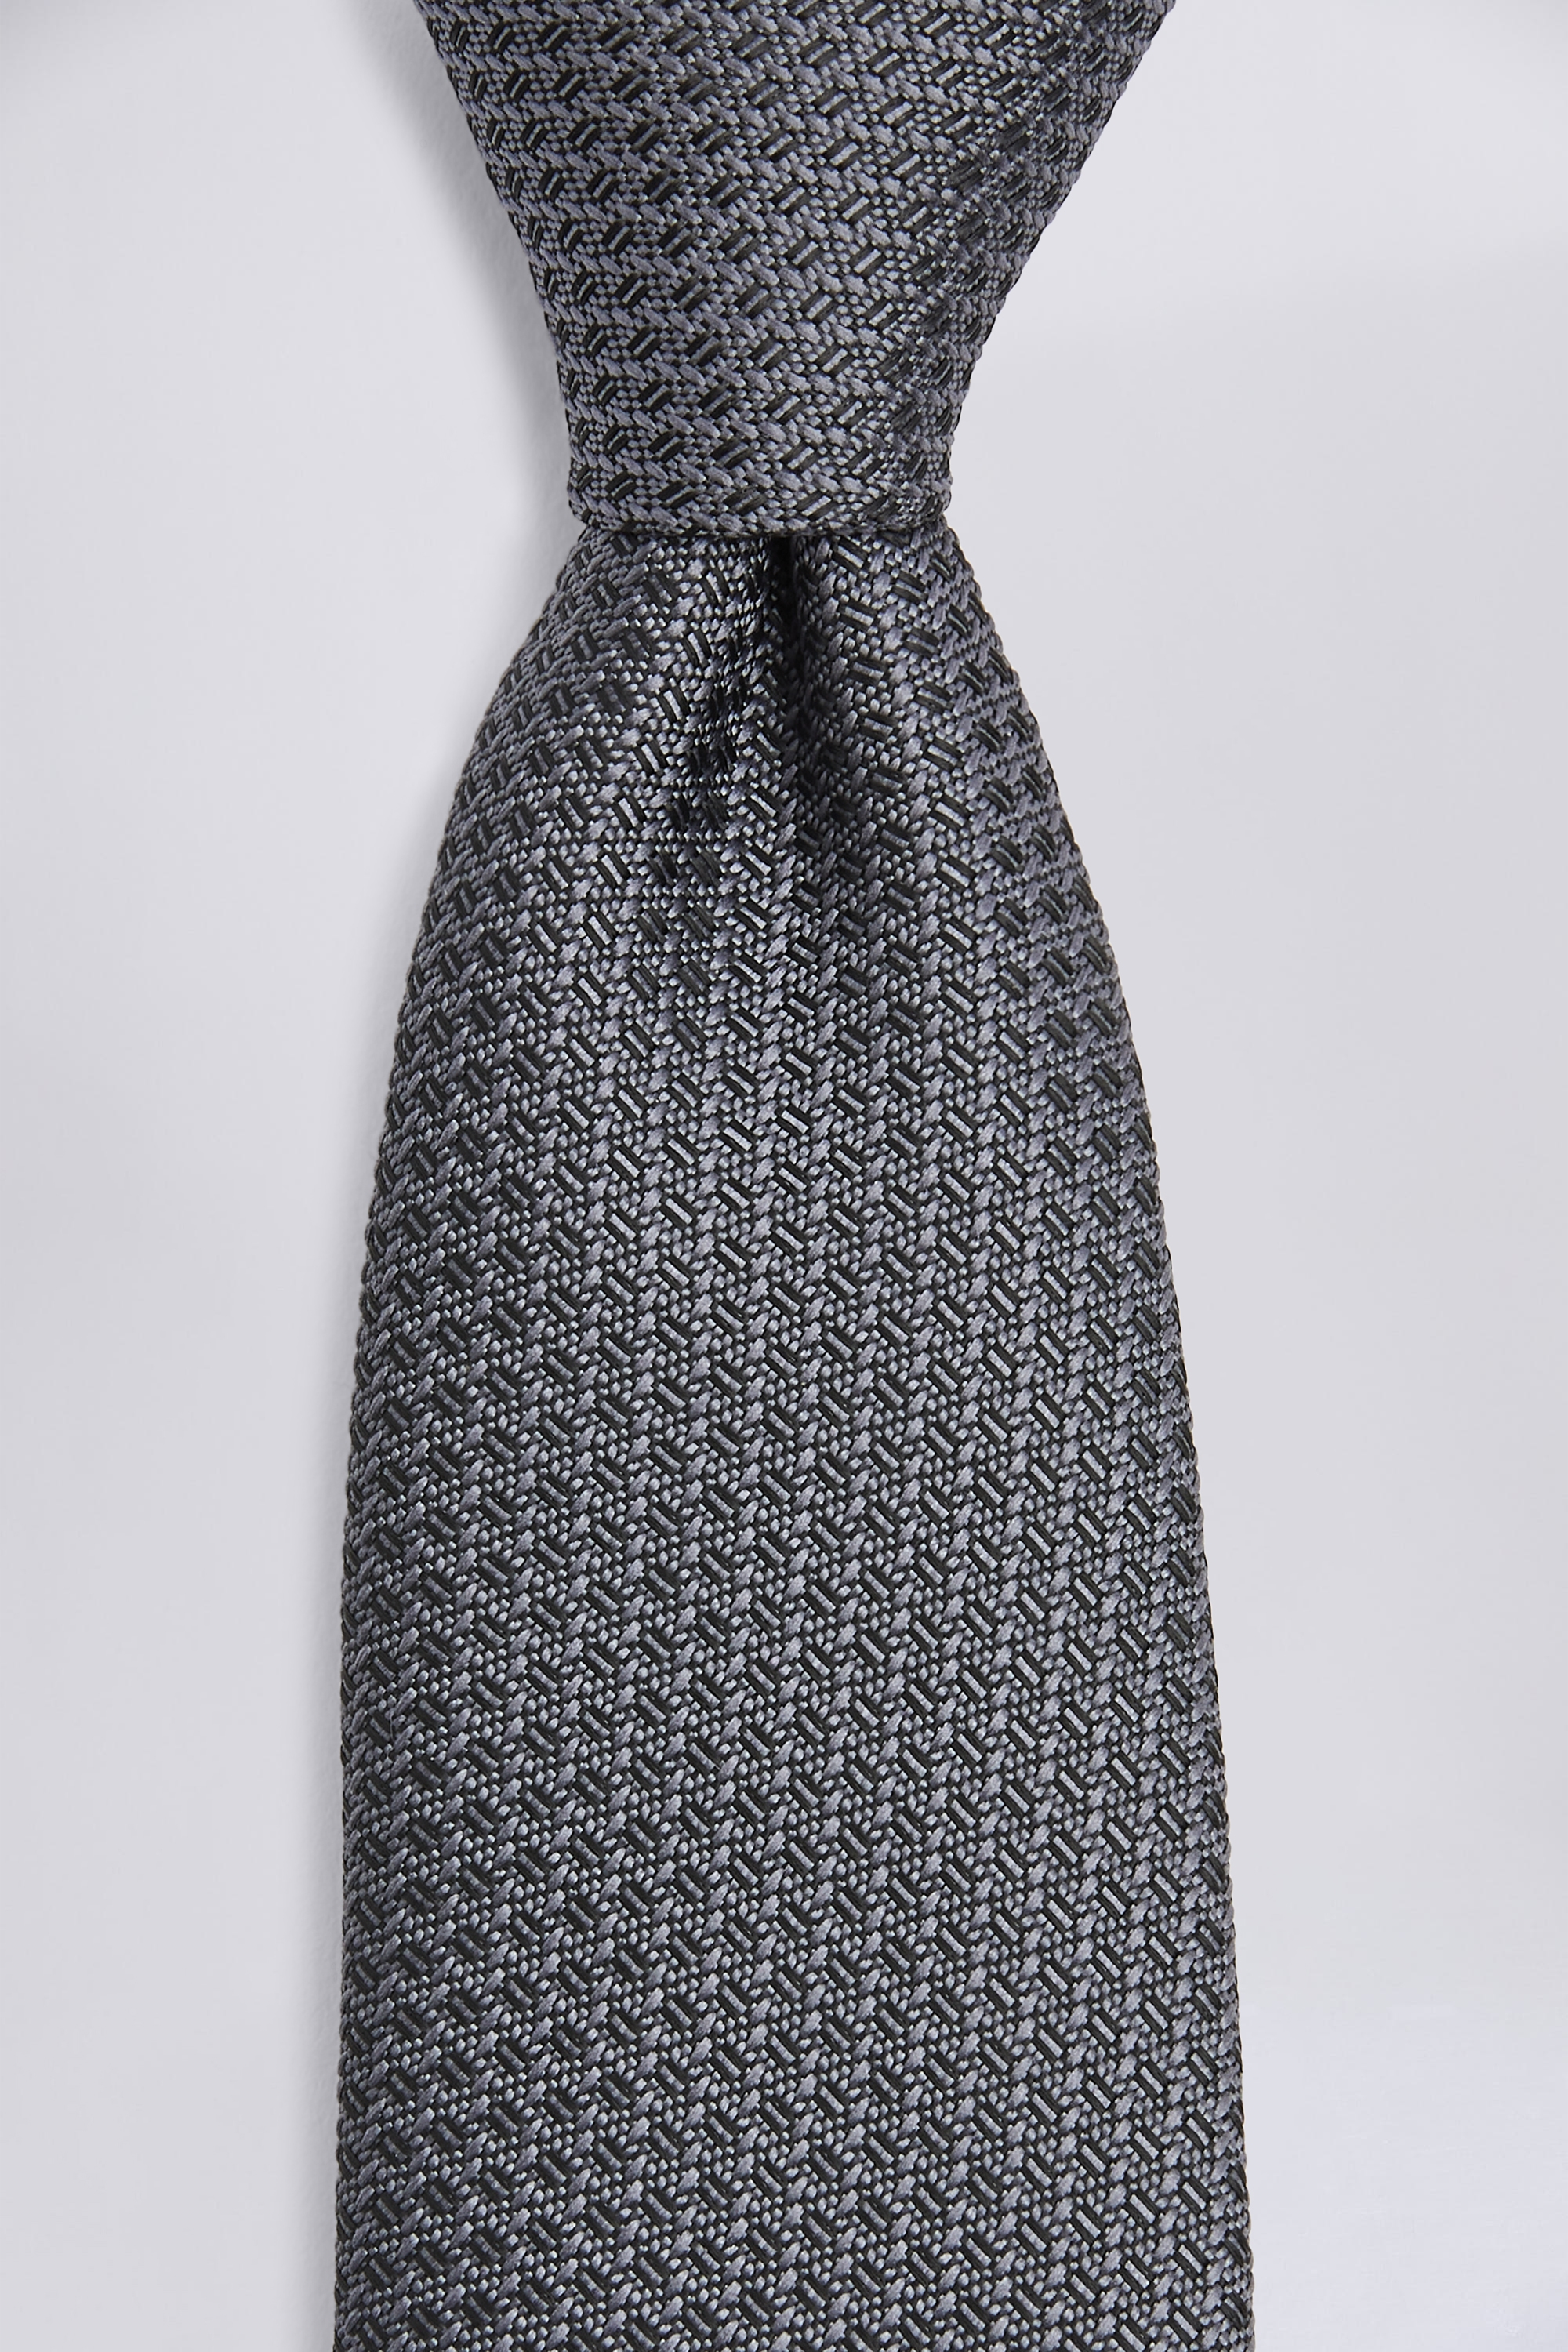 Grey Textured Tie | Buy Online at Moss